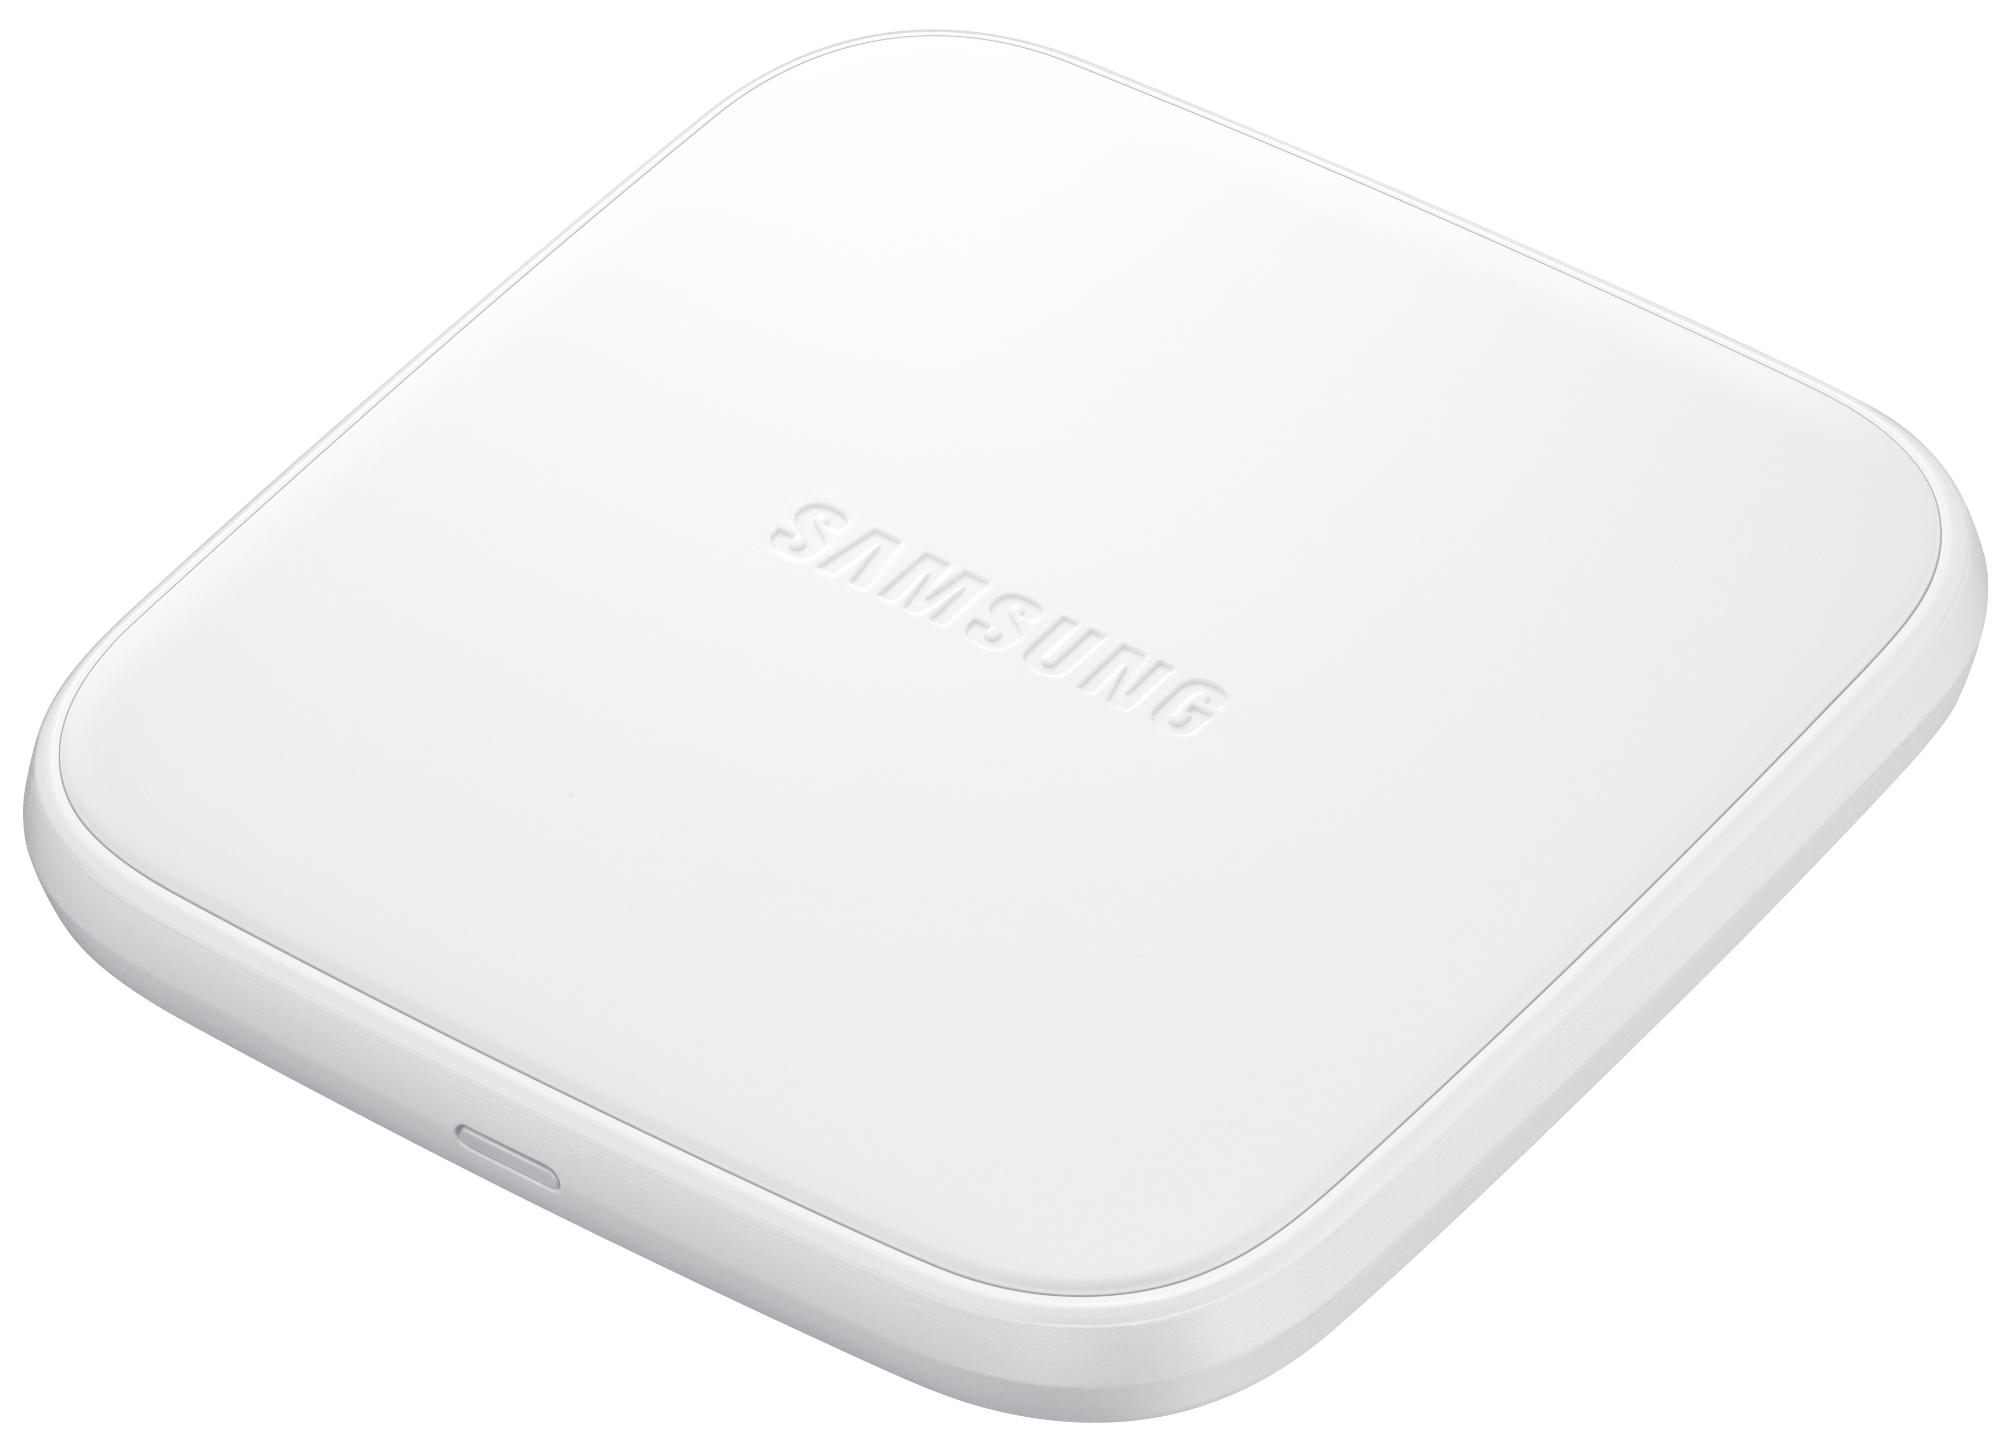 SAMSUNG EP-PA510 Ladestation Samsung, Weiß